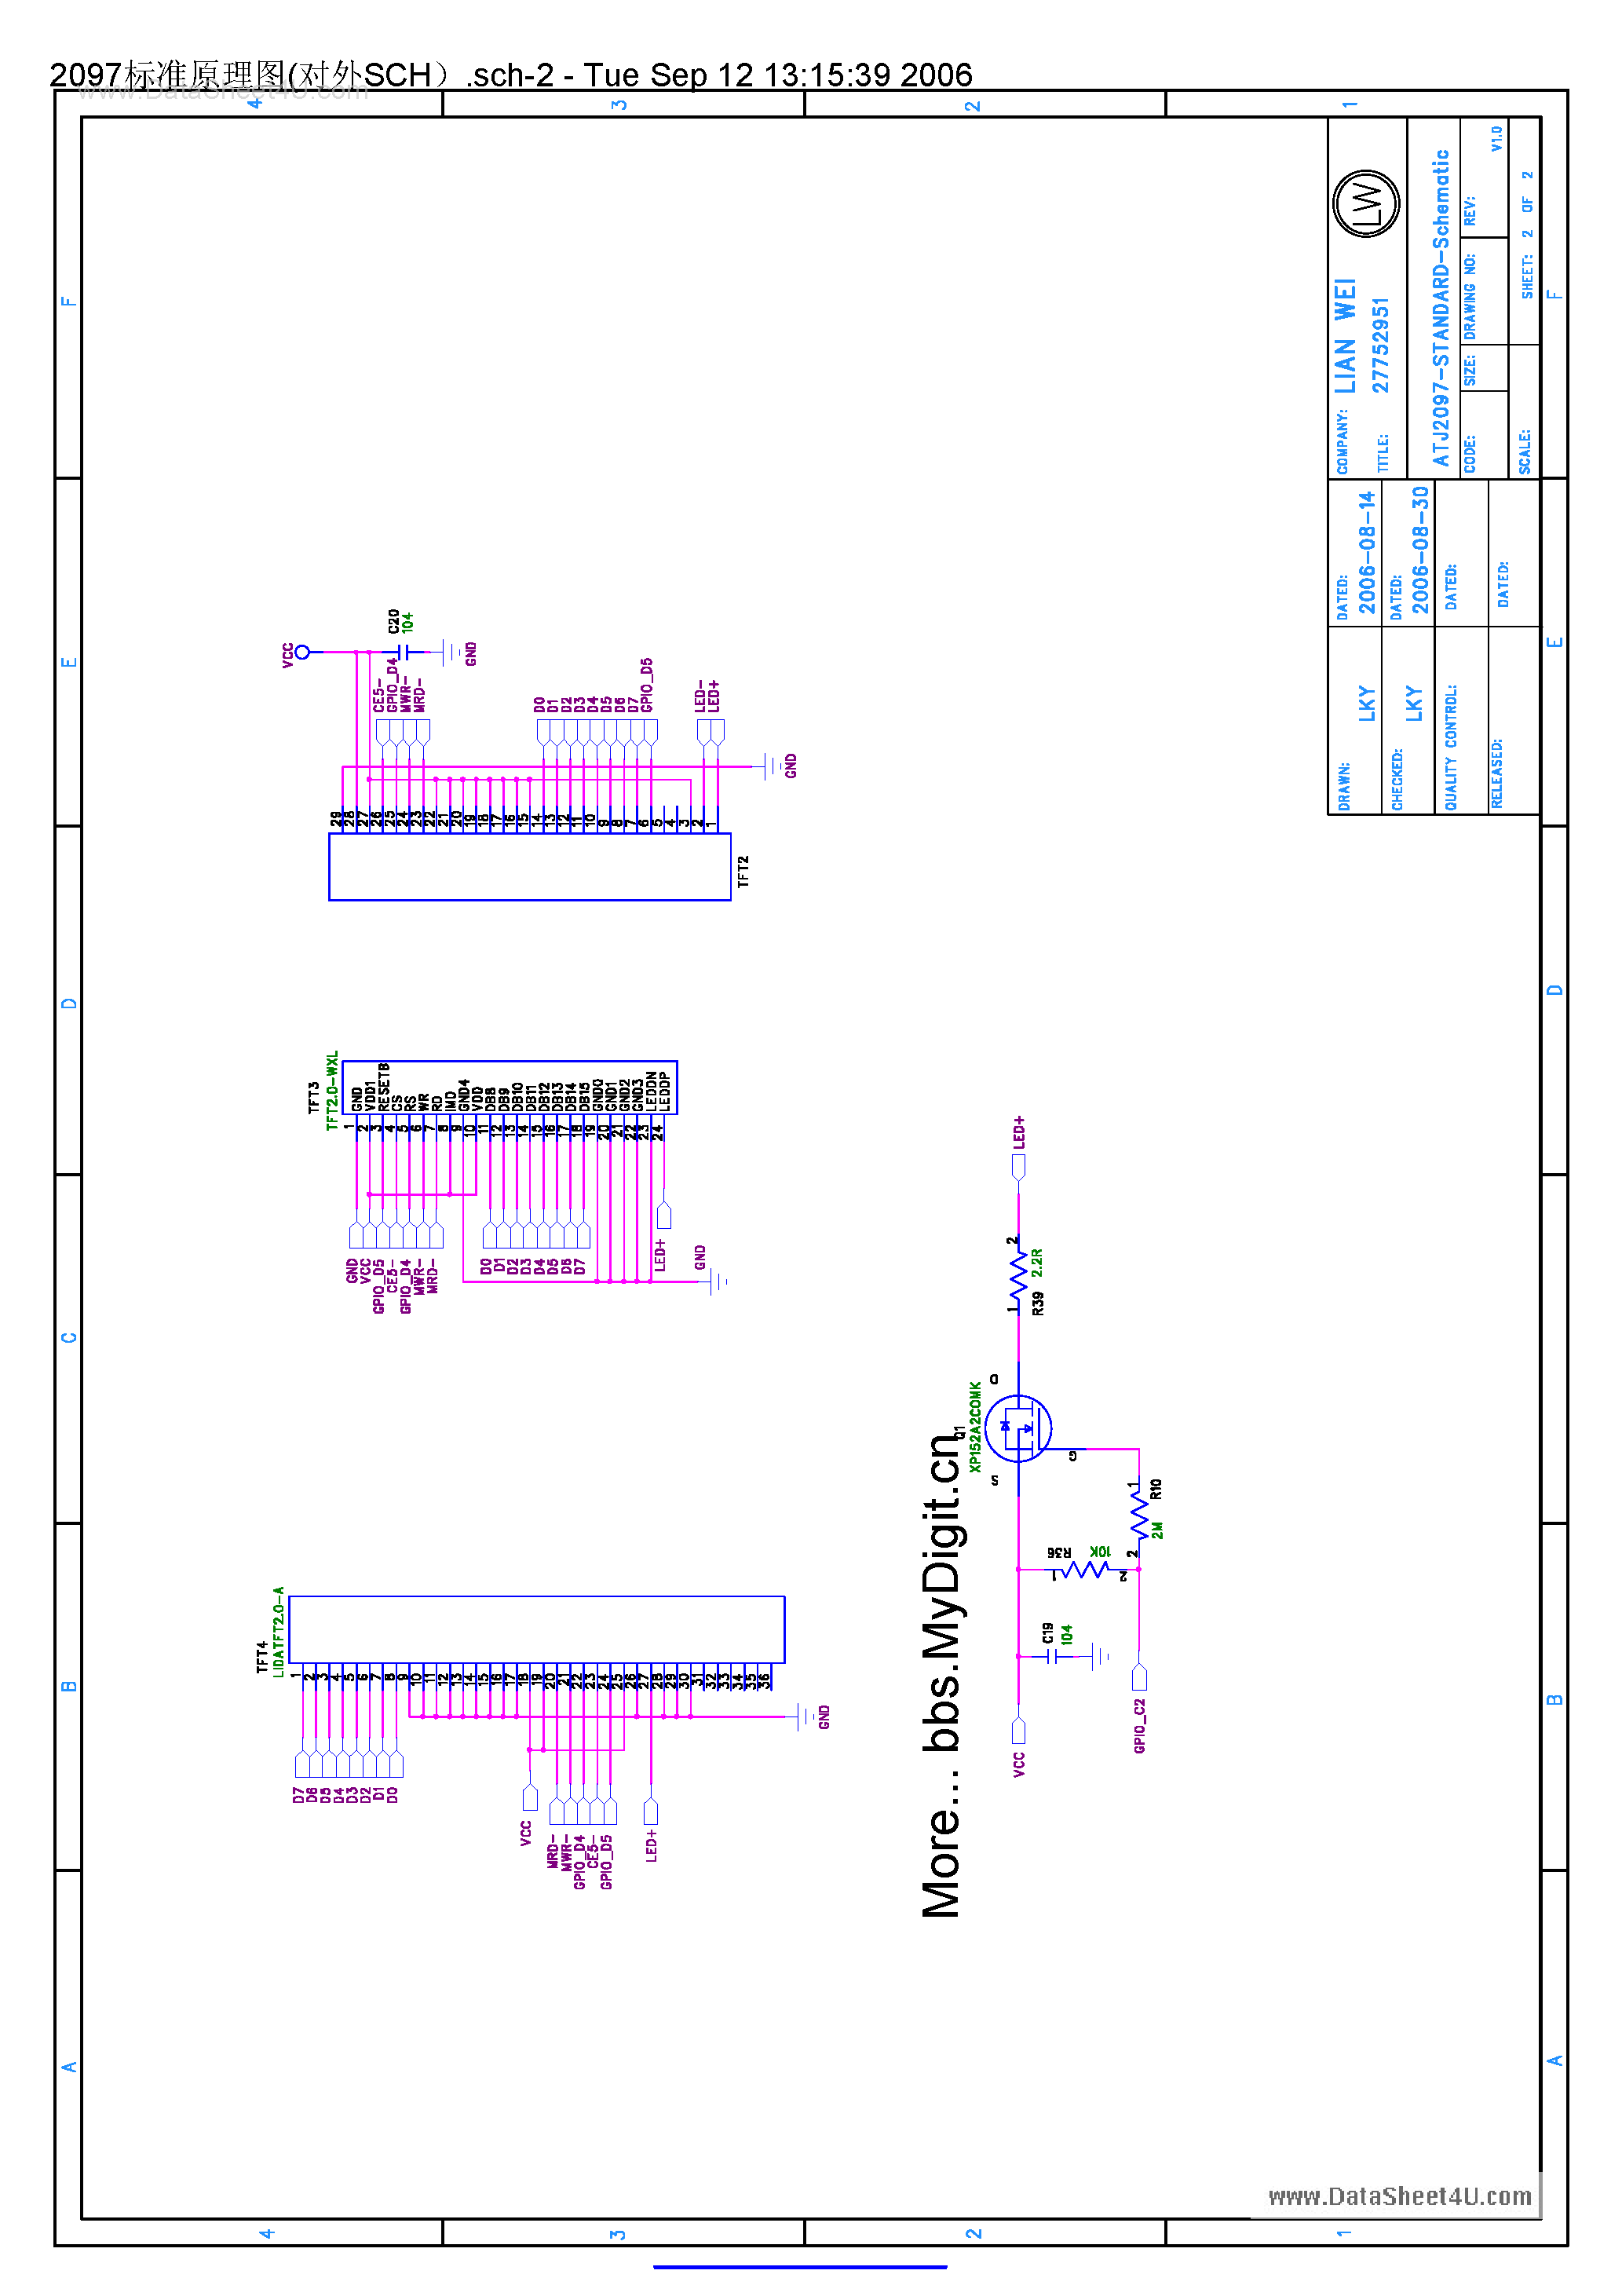 Datasheet ATJ-2097 - Standar schematic page 2